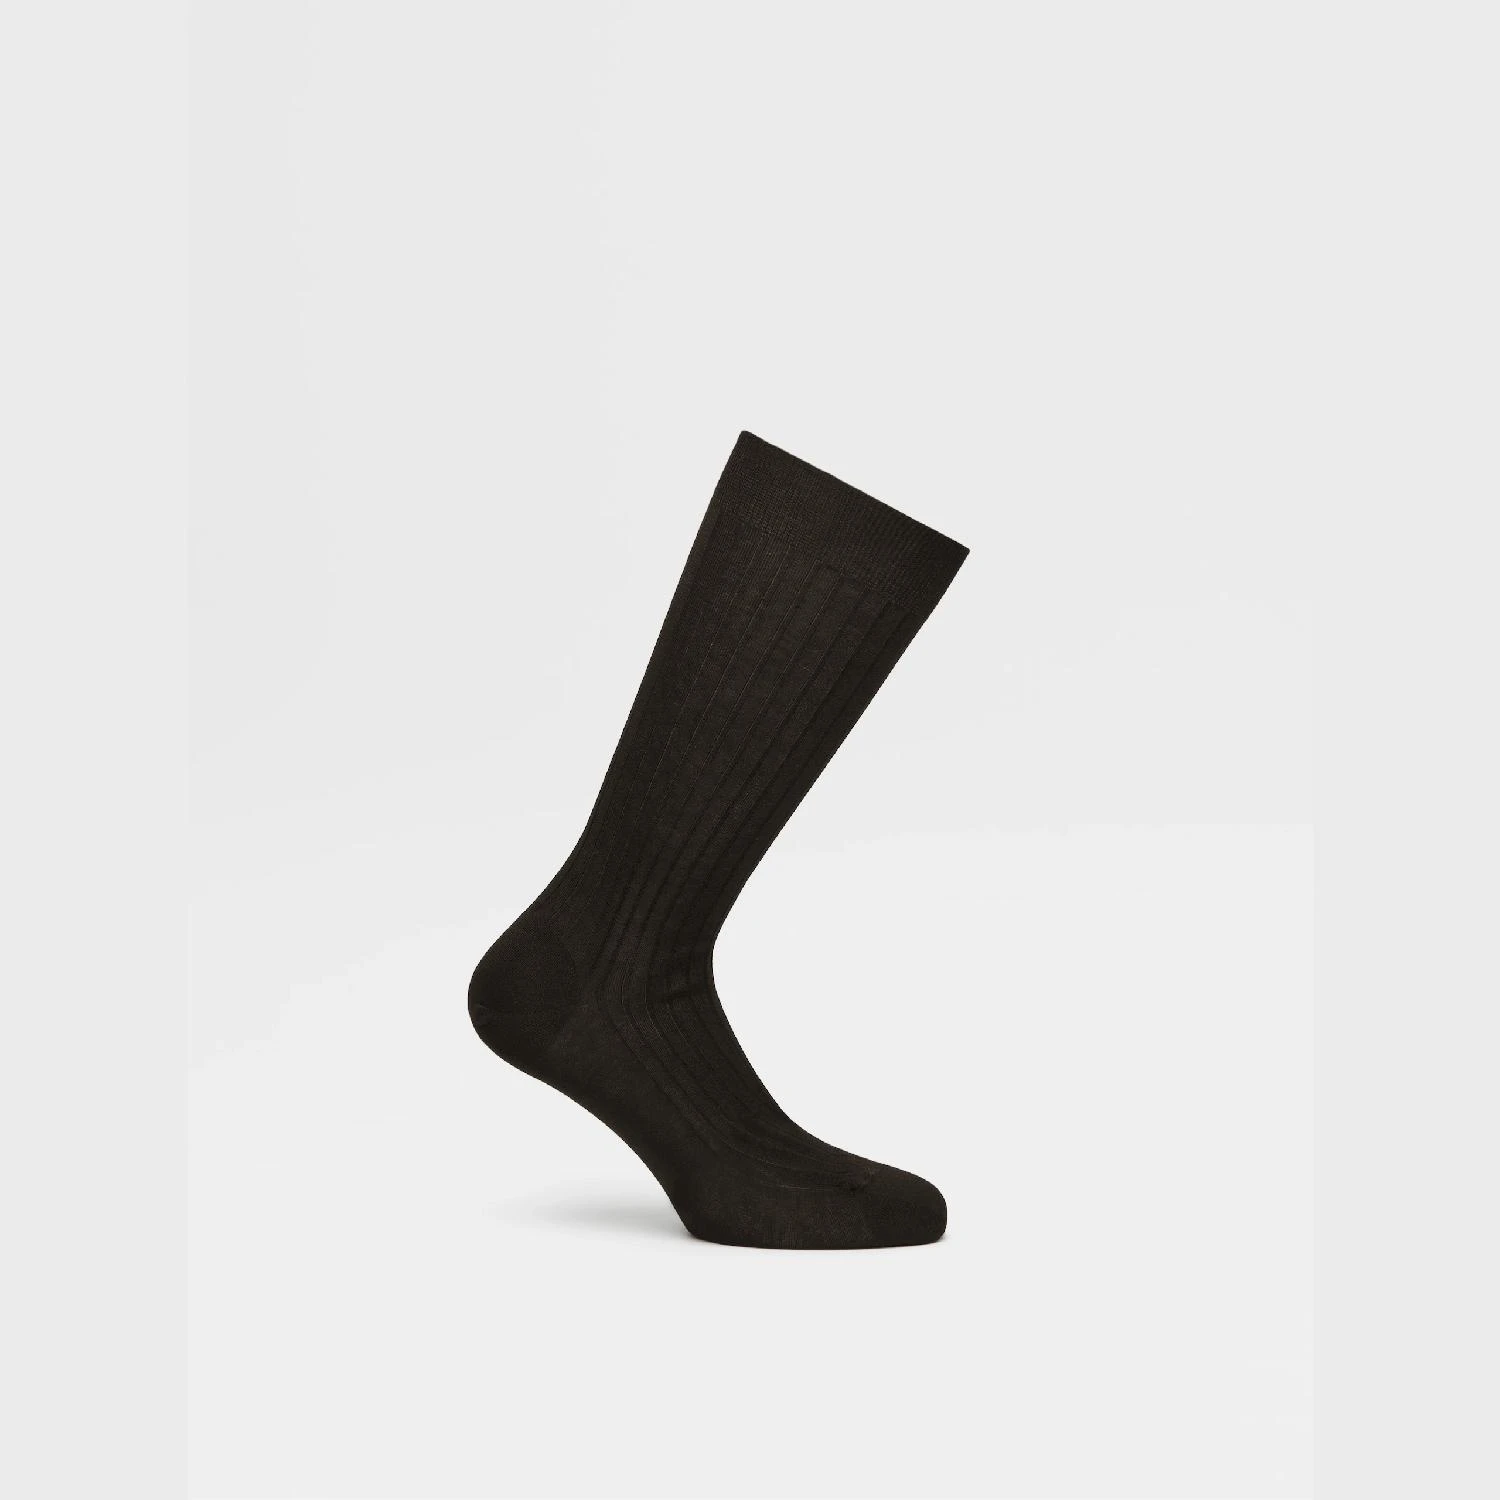 包邮包税【预售7天发货】 ZEGNA杰尼亚 23秋冬 男士 袜子 Black Cotton Socks N4V40-010-001 商品